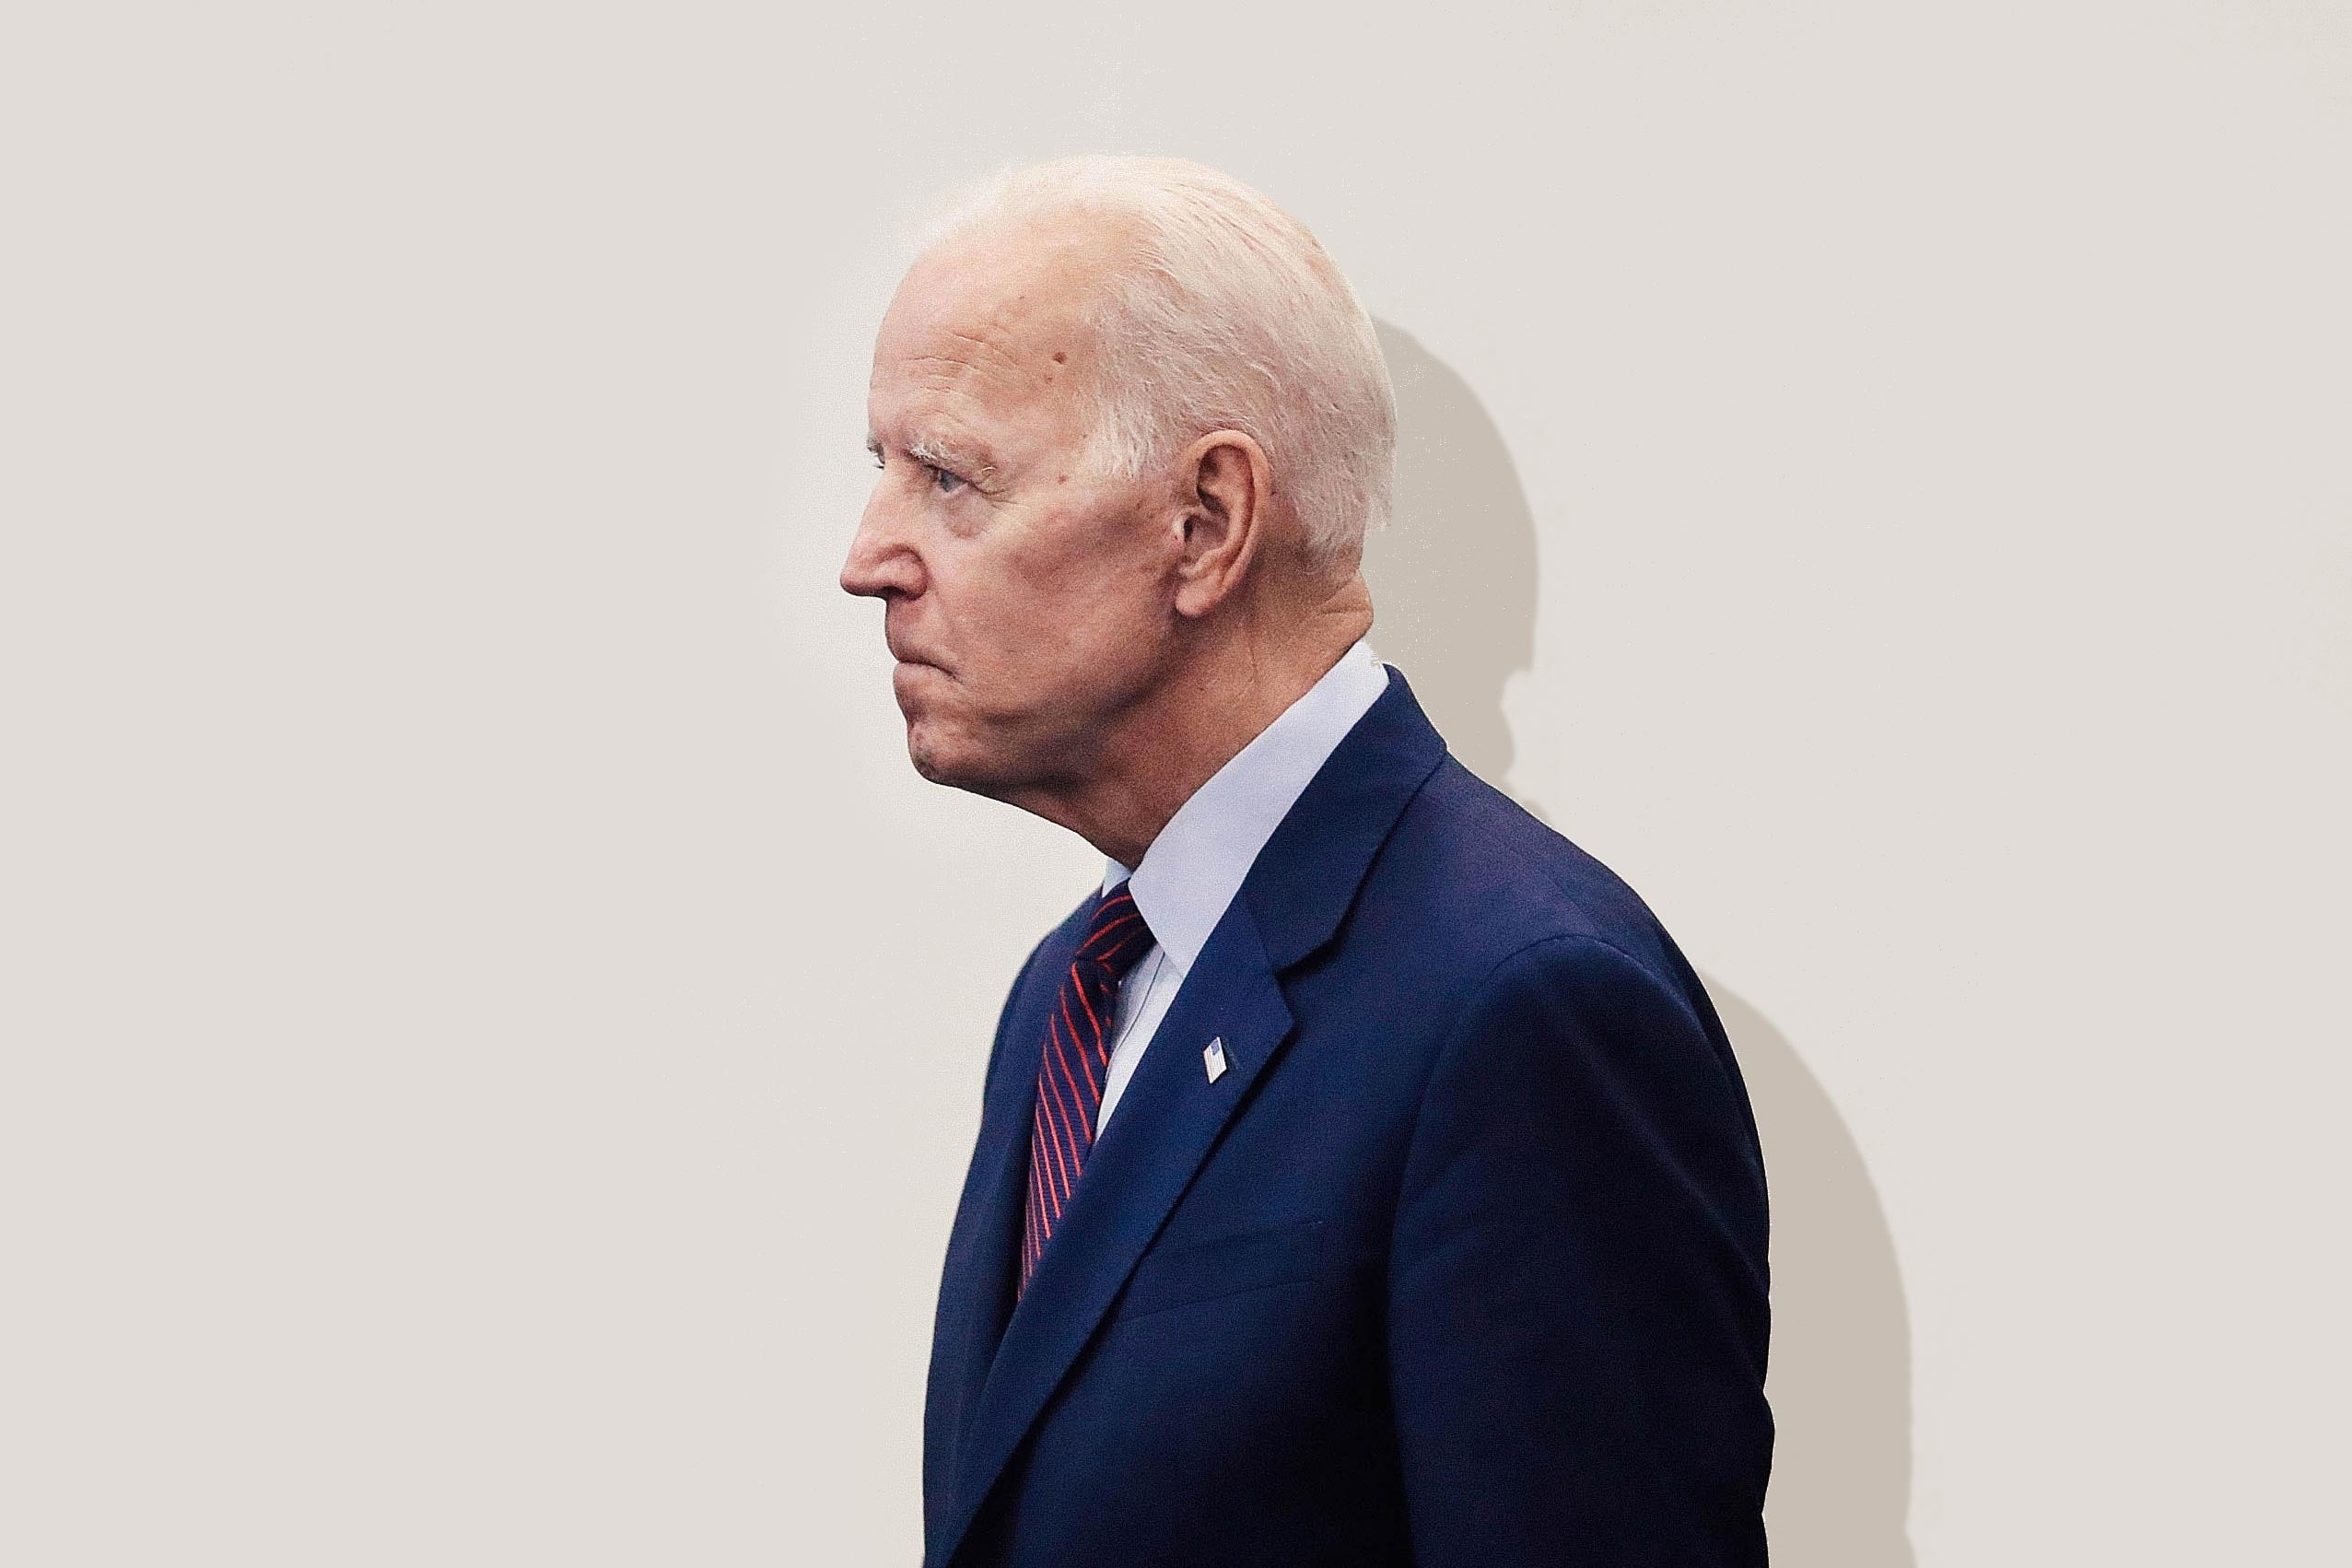 Joe Biden in profile, looking stern.